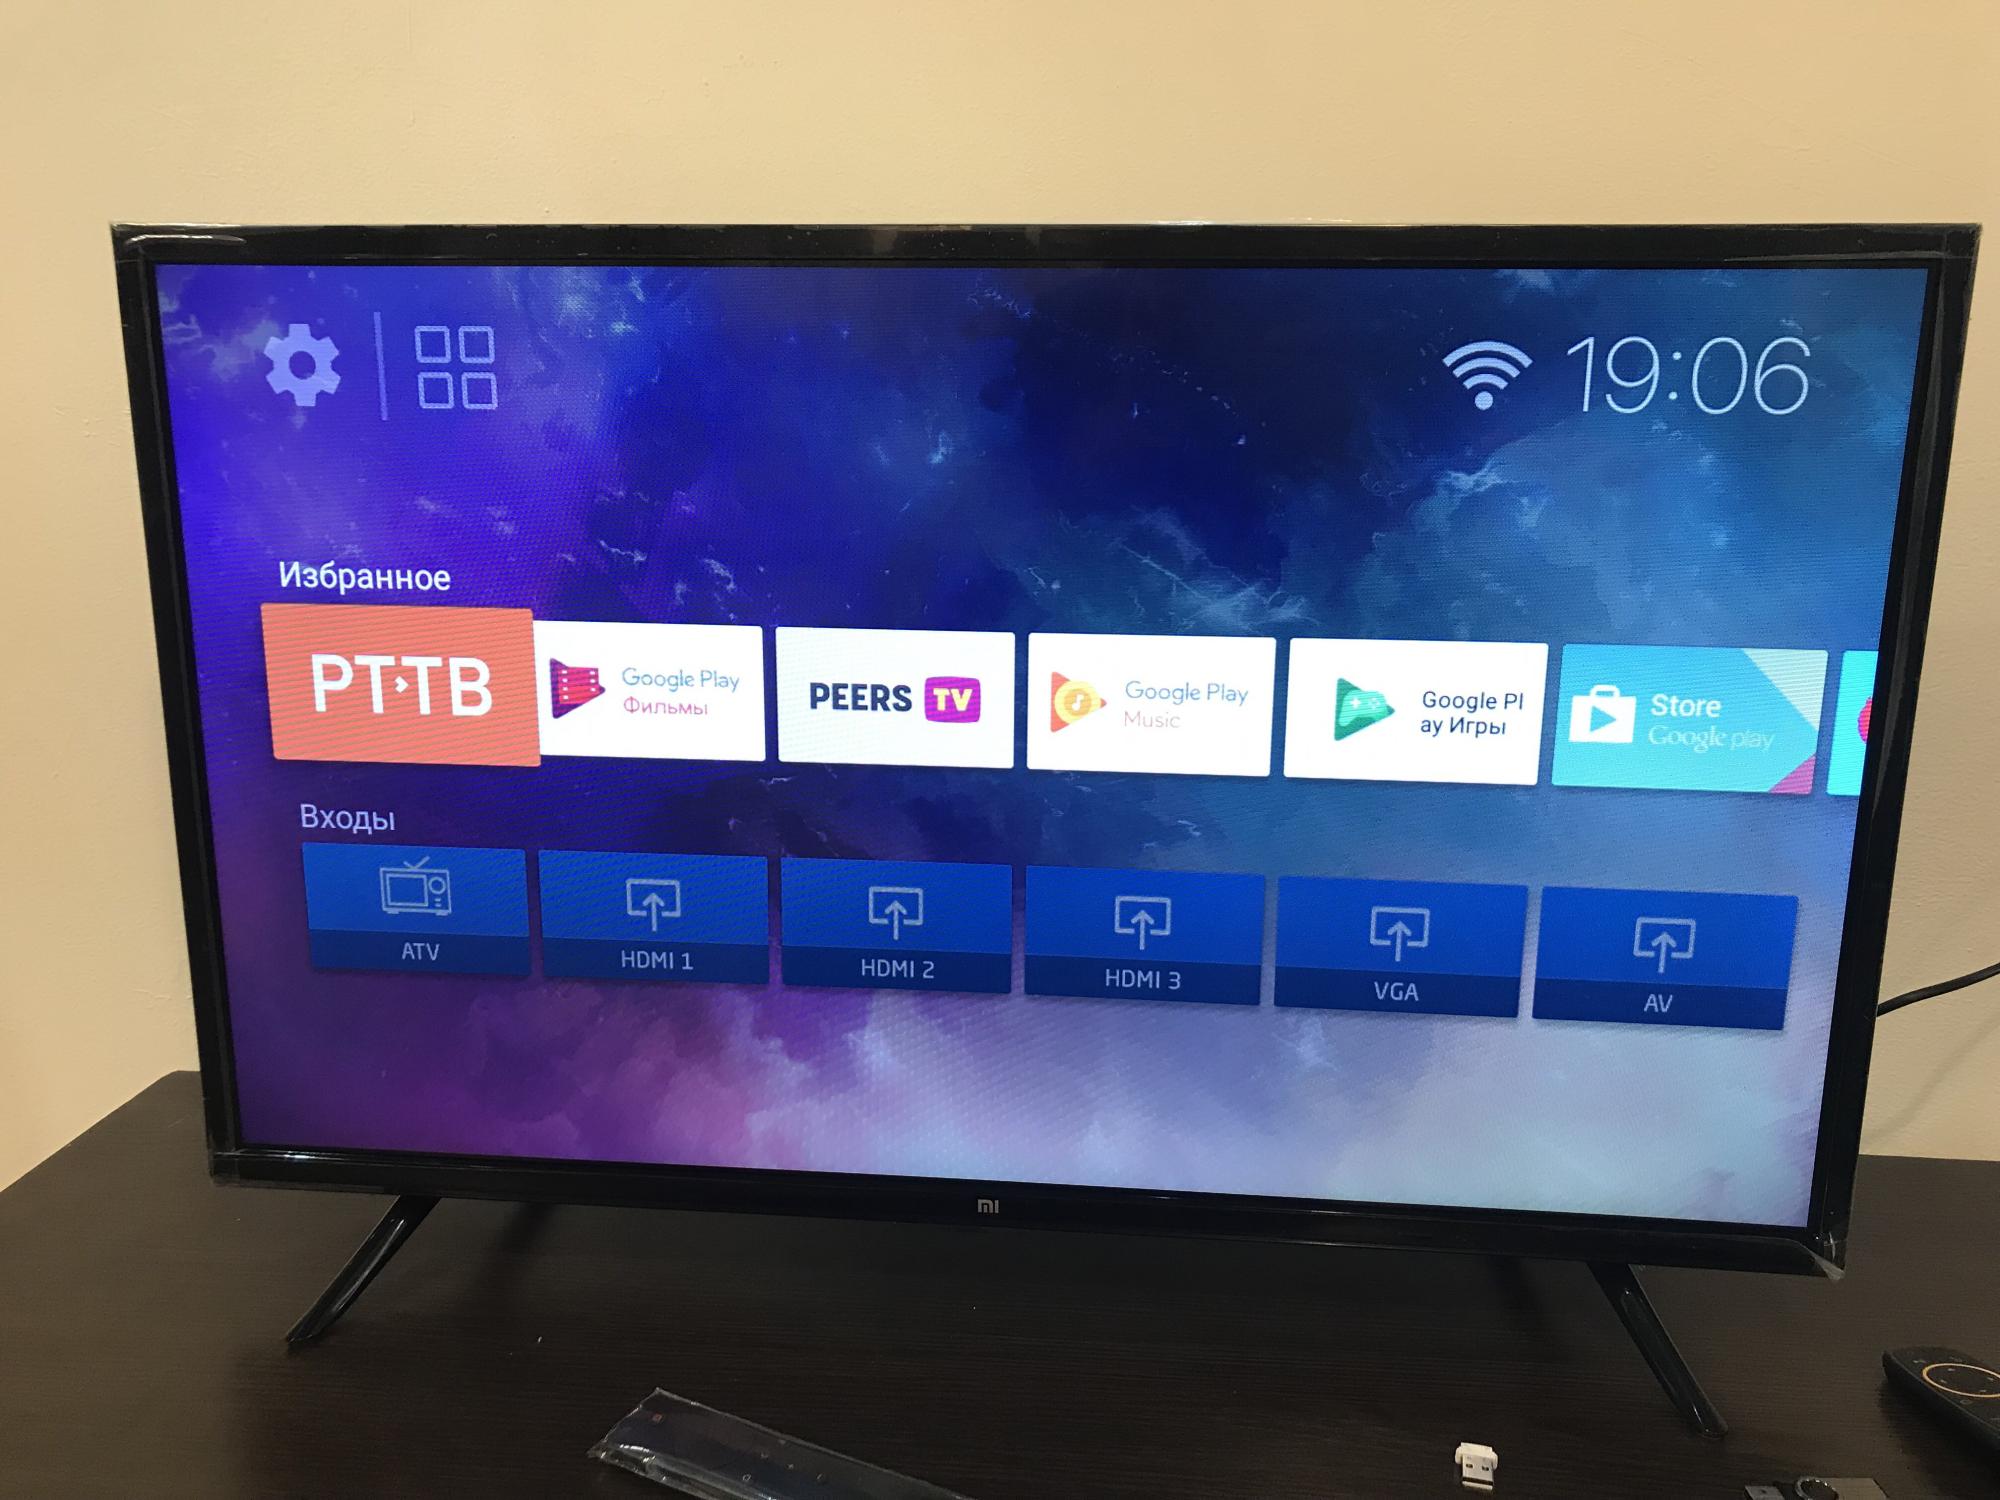 Днс телевизор mi. Телевизор хиаоми 32 дюйма смарт ТВ. Xiaomi 32 дюйма. Xiaomi 4a телевизор. Xiaomi TV 4a 32.